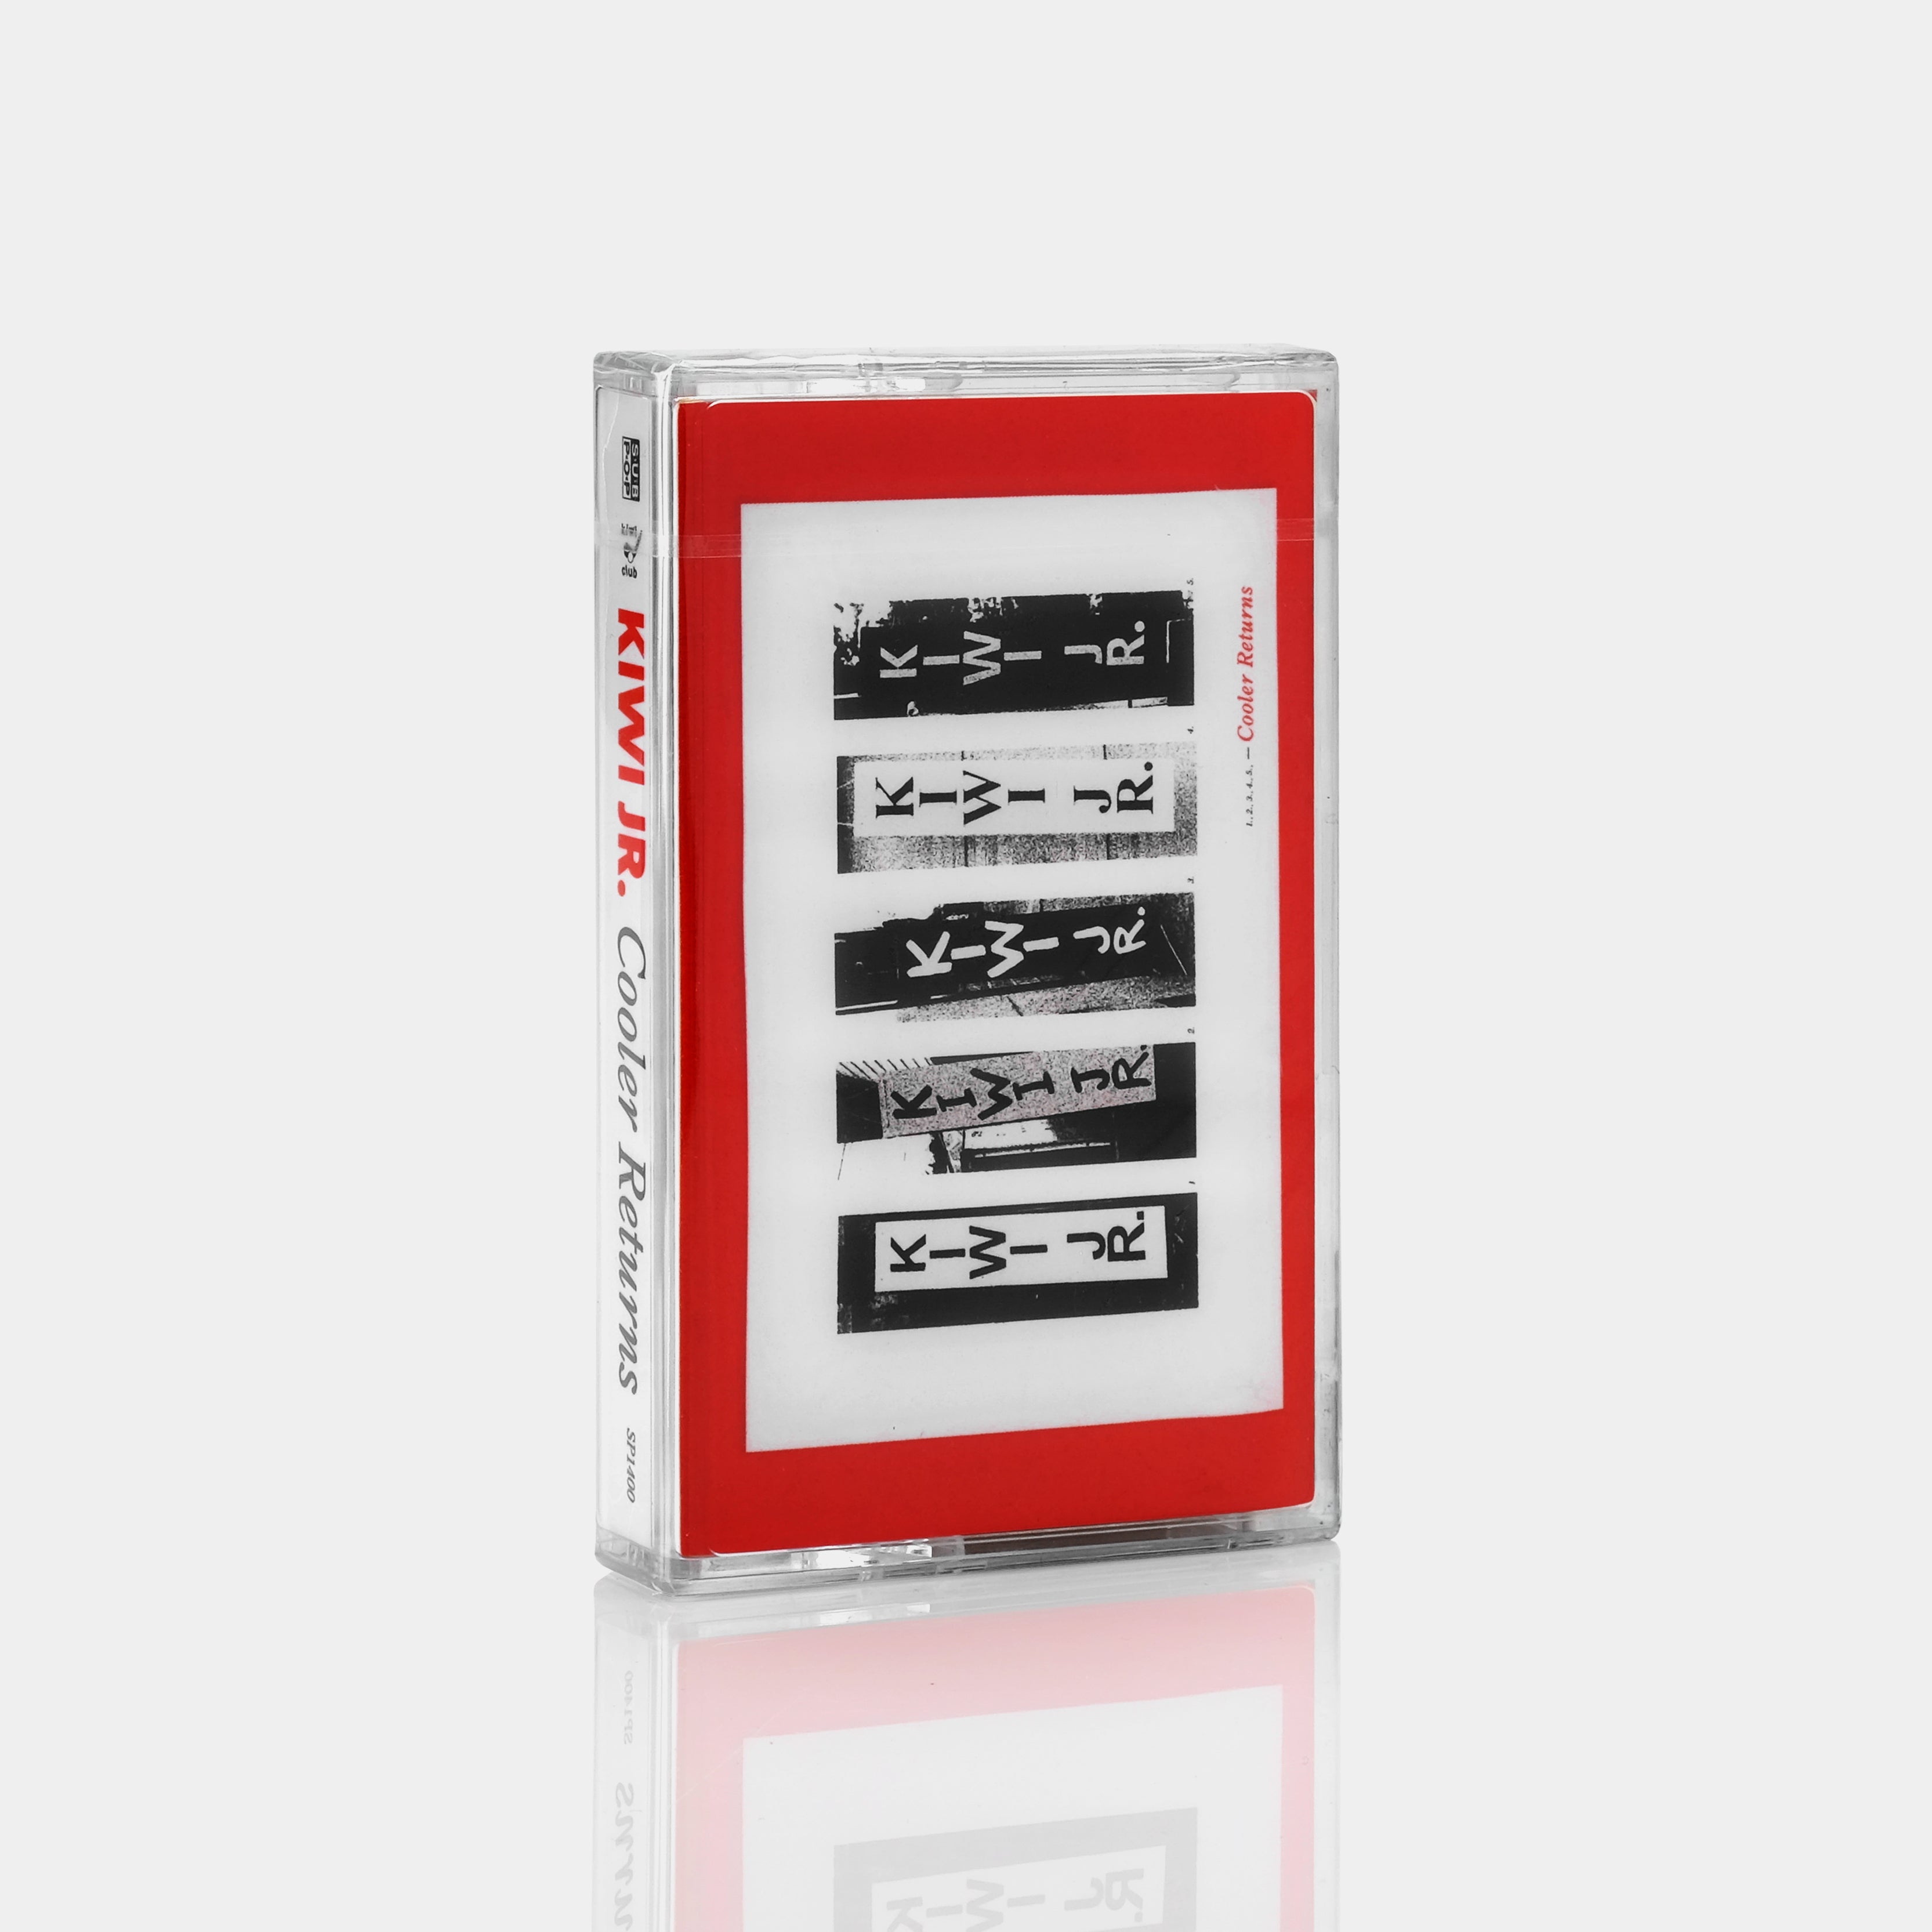 Kiwi Jr. - Cooler Returns Cassette Tape